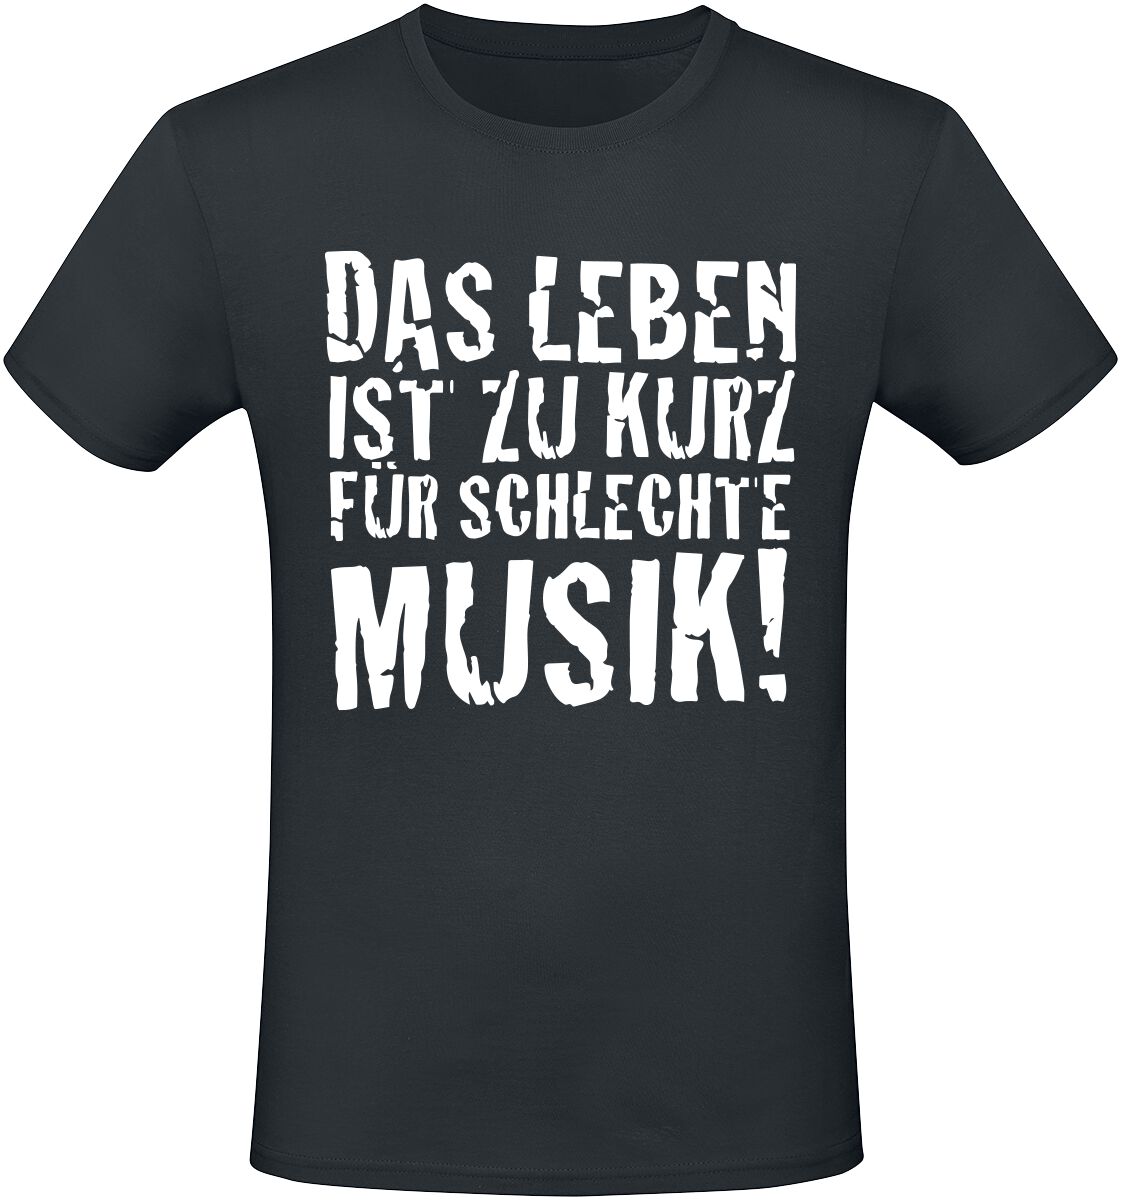 Sprüche Das Leben ist zu kurz für schlechte Musik! T-Shirt schwarz in M